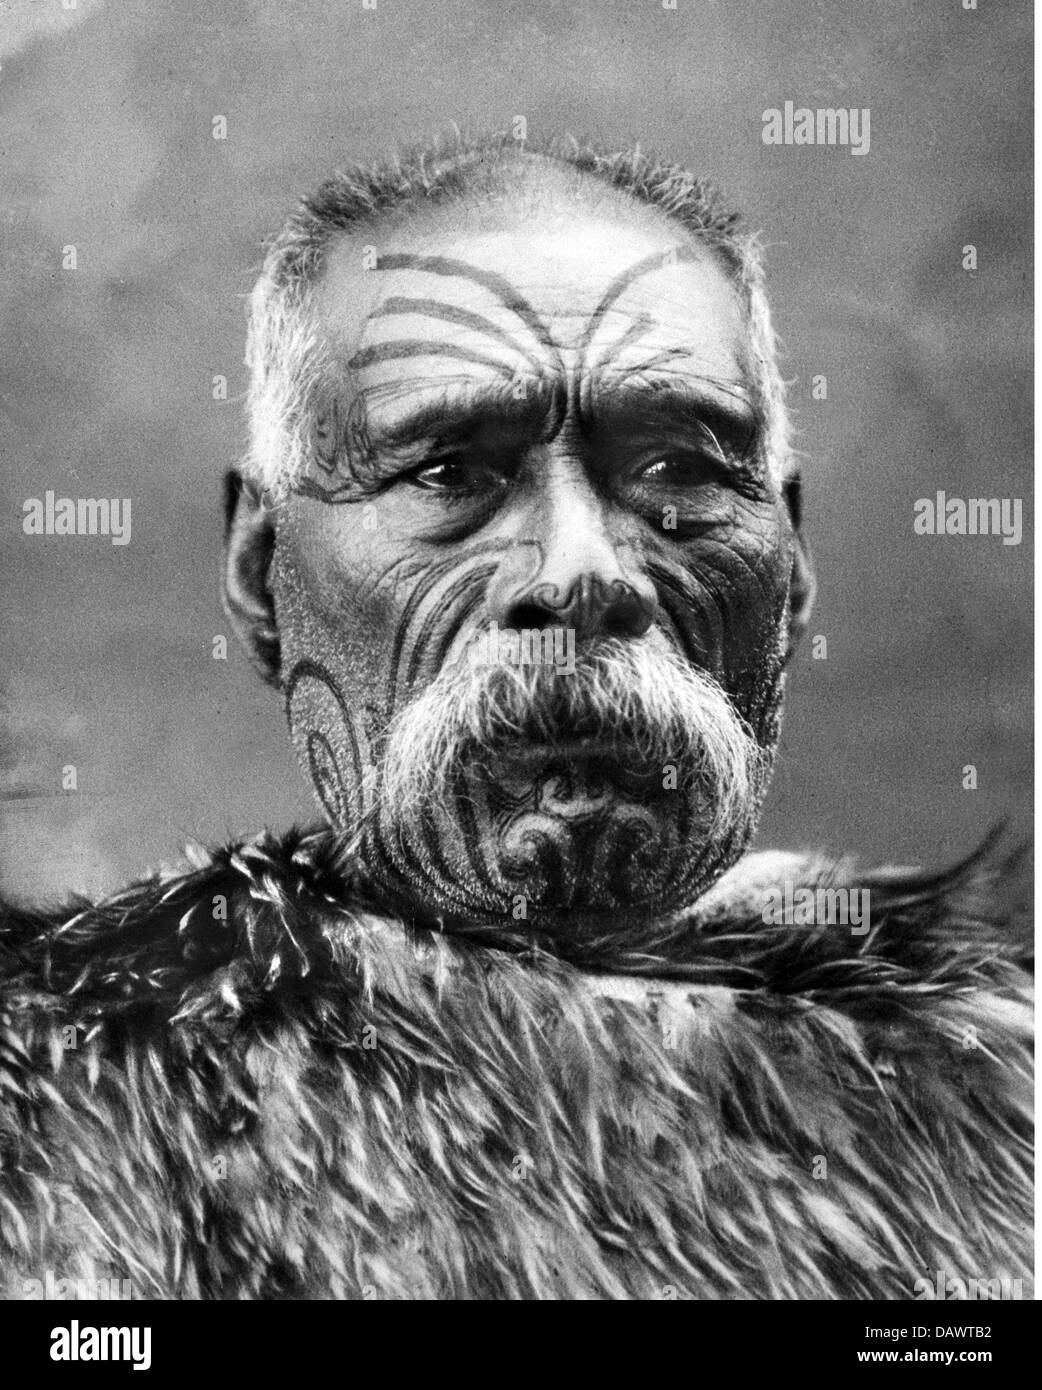 People, ethnologie, men, Nouvelle-Zélande, portrait d'un chef maori vers les années 1950, Additional-Rights-Clearences-not available Banque D'Images